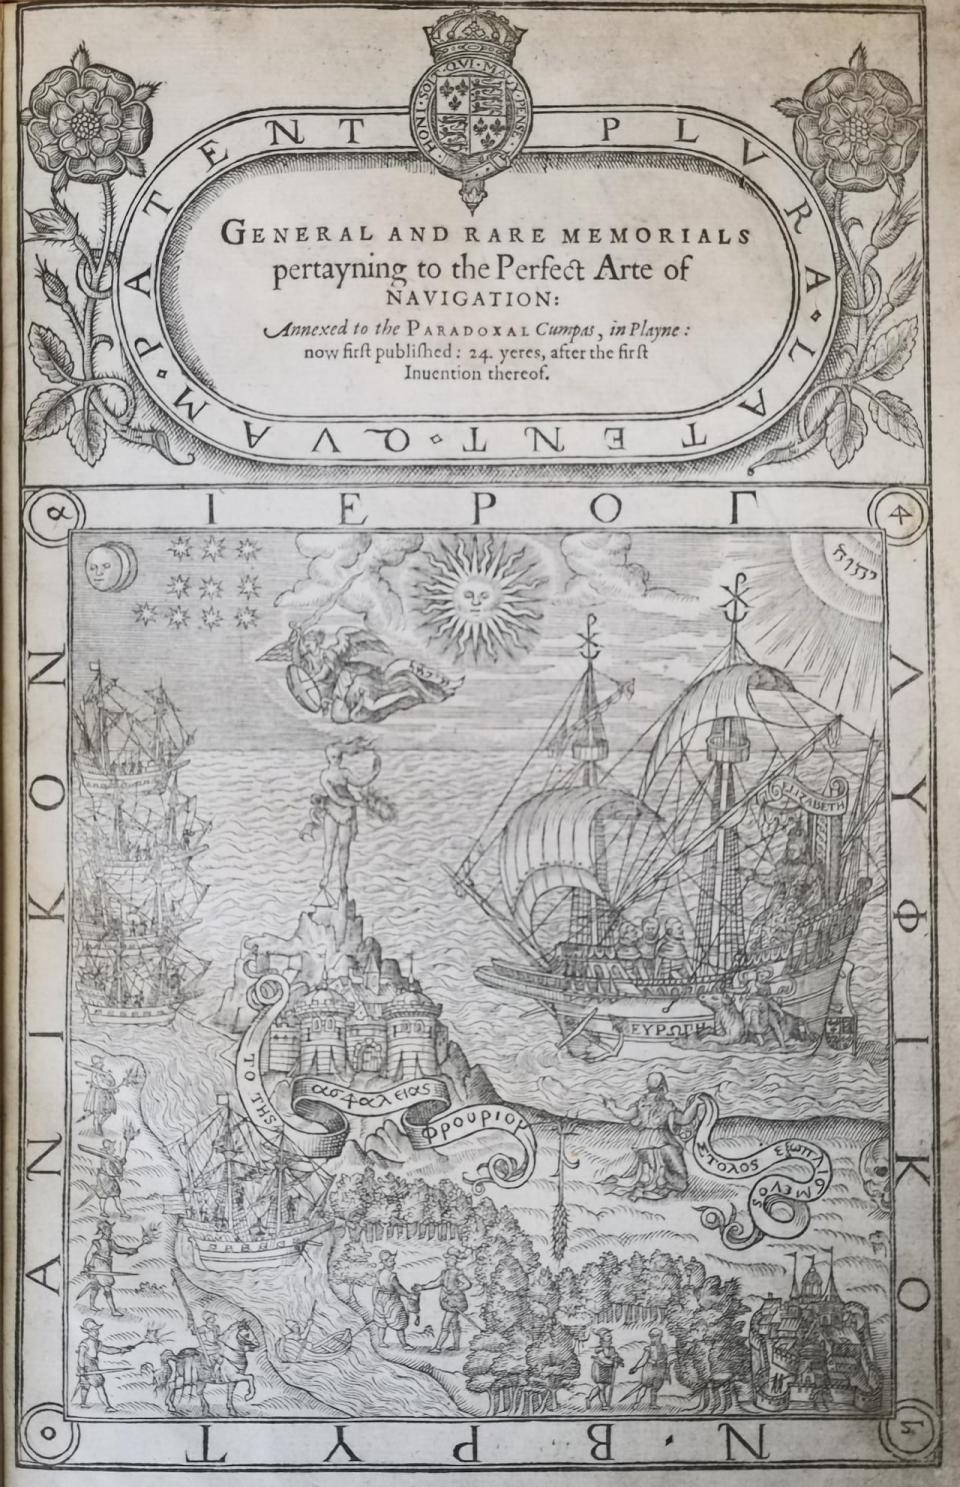 Η σελίδα τίτλου του βιβλίου του John Dee του 1577 για την τέχνη της ναυσιπλοΐας ενσωματώνει εσωτερικά σύμβολα, όπως τον ήλιο, το φεγγάρι, τα αστέρια και ένα λαμπερό τετραγράμματο, για να συμβολίσει τη θεϊκή έγκριση του βρετανικού ιμπεριαλισμού υπό τη βασίλισσα Ελισάβετ 1. 